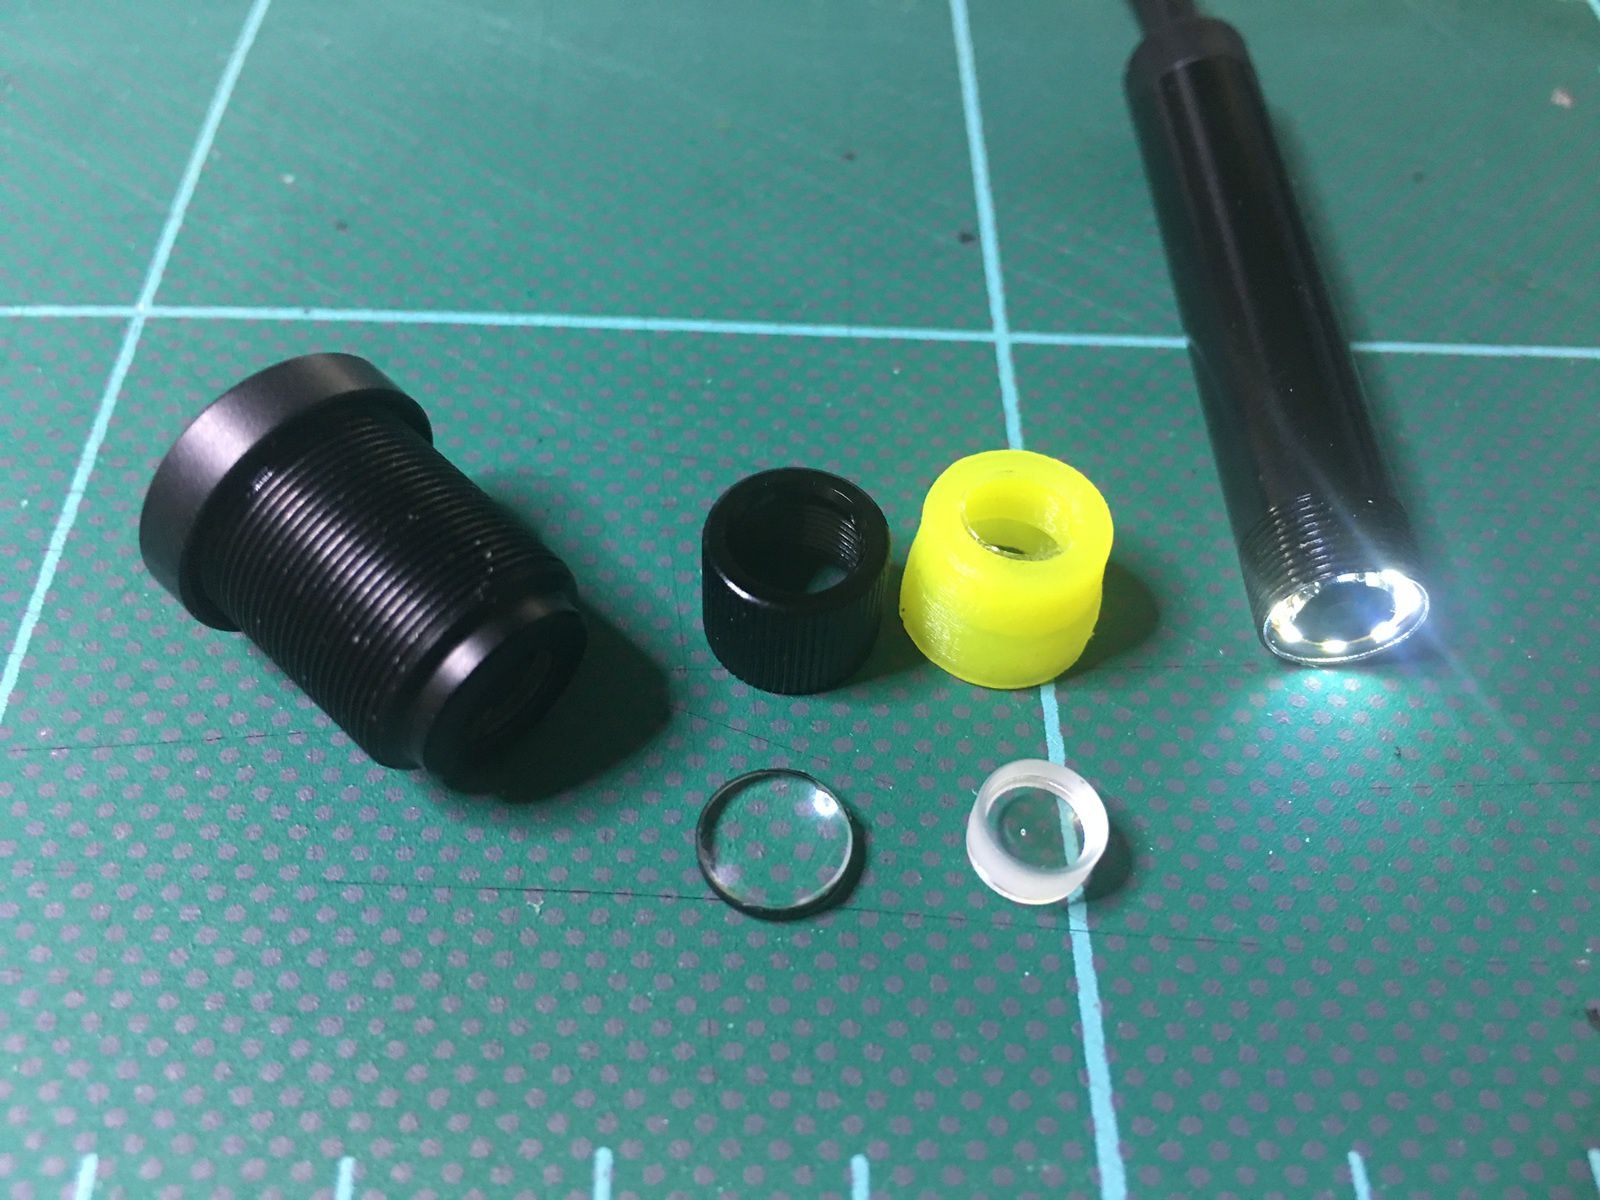 Dans l'ordre de gauche à droite, une lentille complete de Webcam PC : contient plusieures lentilles convexes et concaves, la lentille convexe et embout noir, la lentille concave et embout jaune, la tête d'endoscope